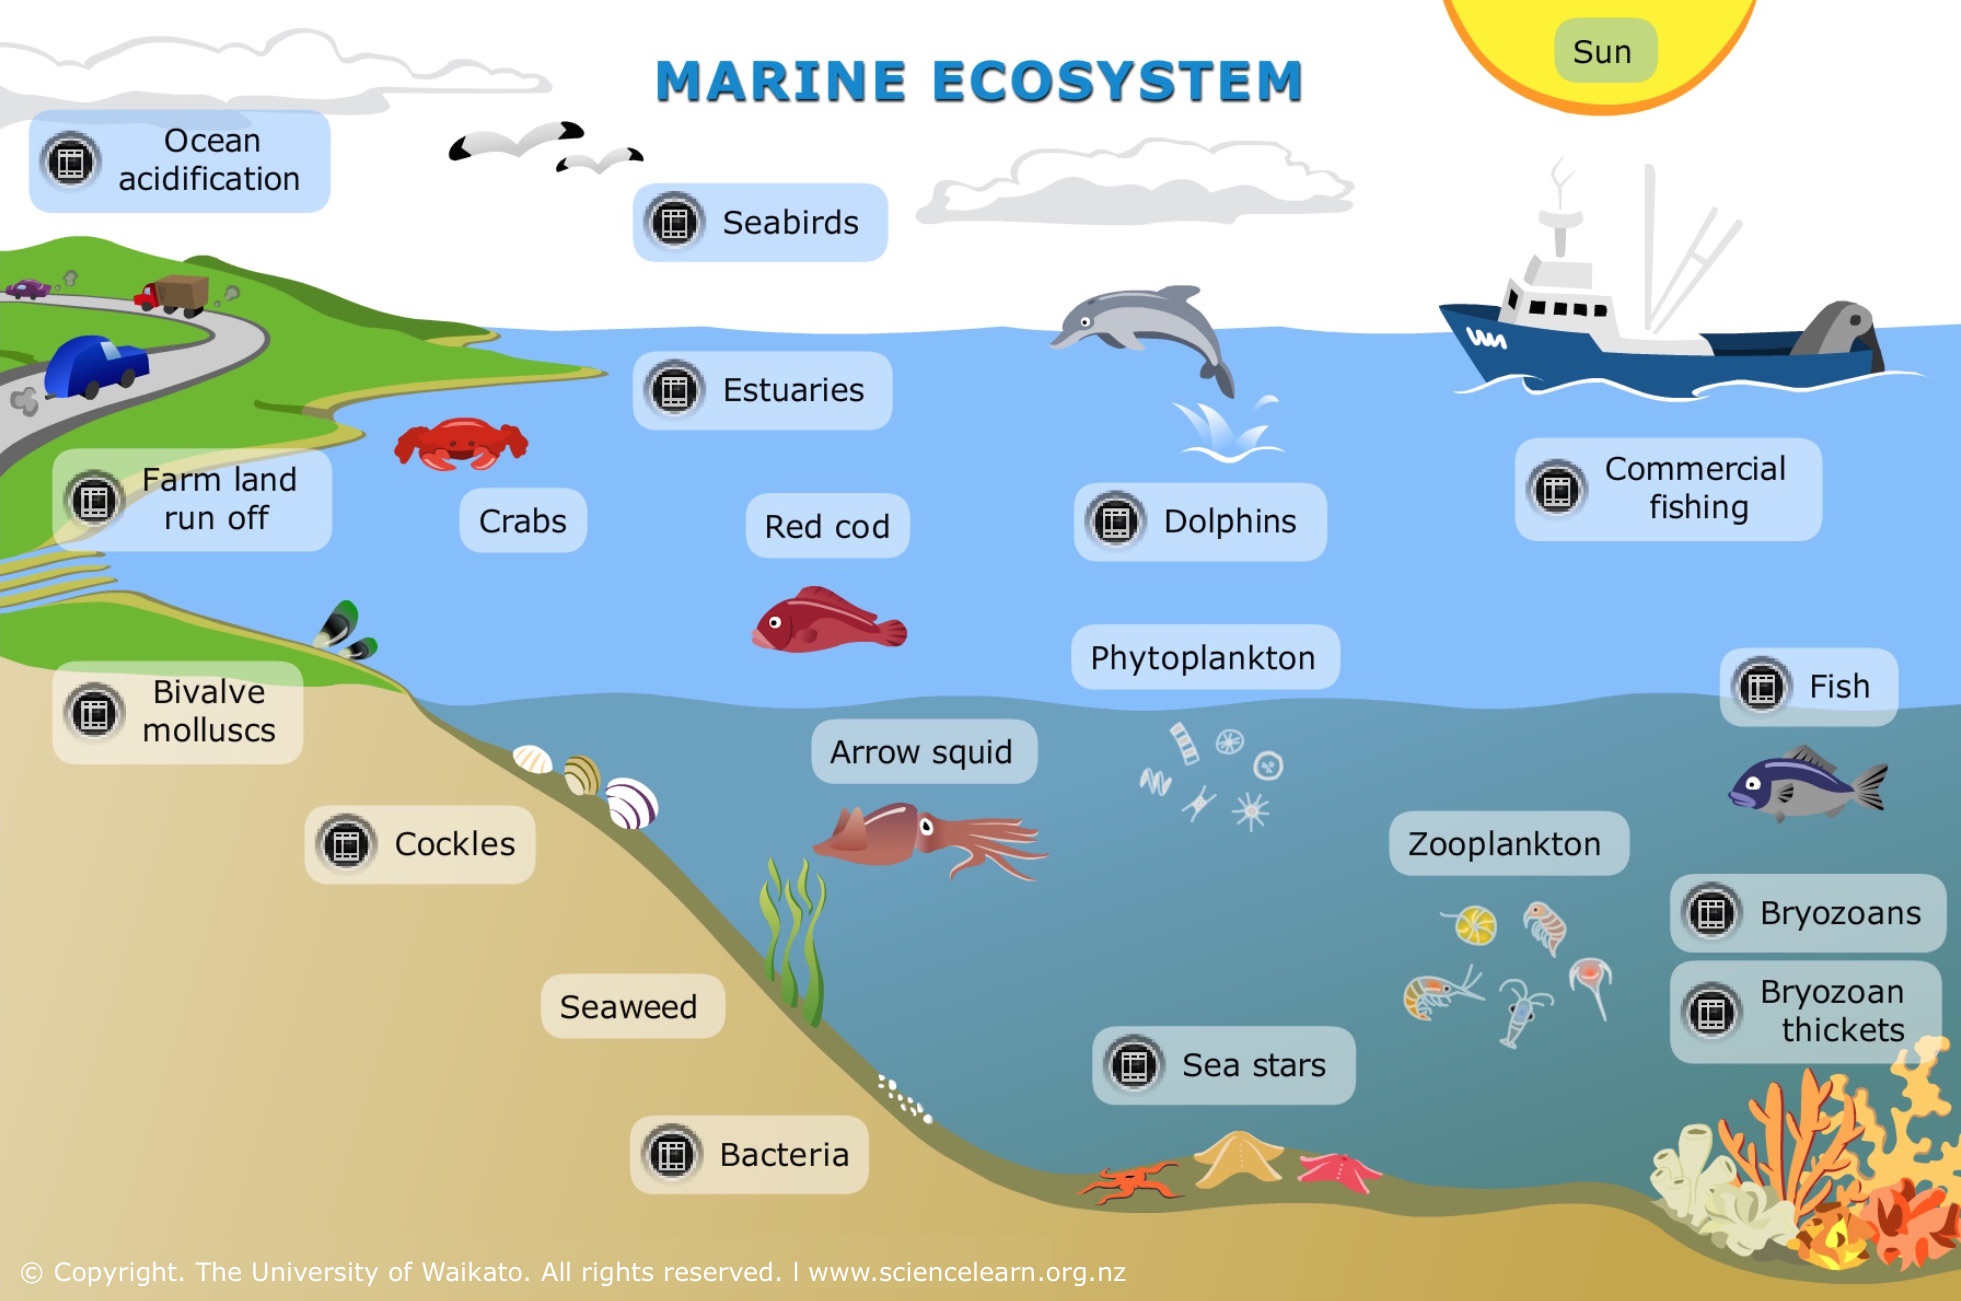 Ocean Ecosystem Food Web Diagram